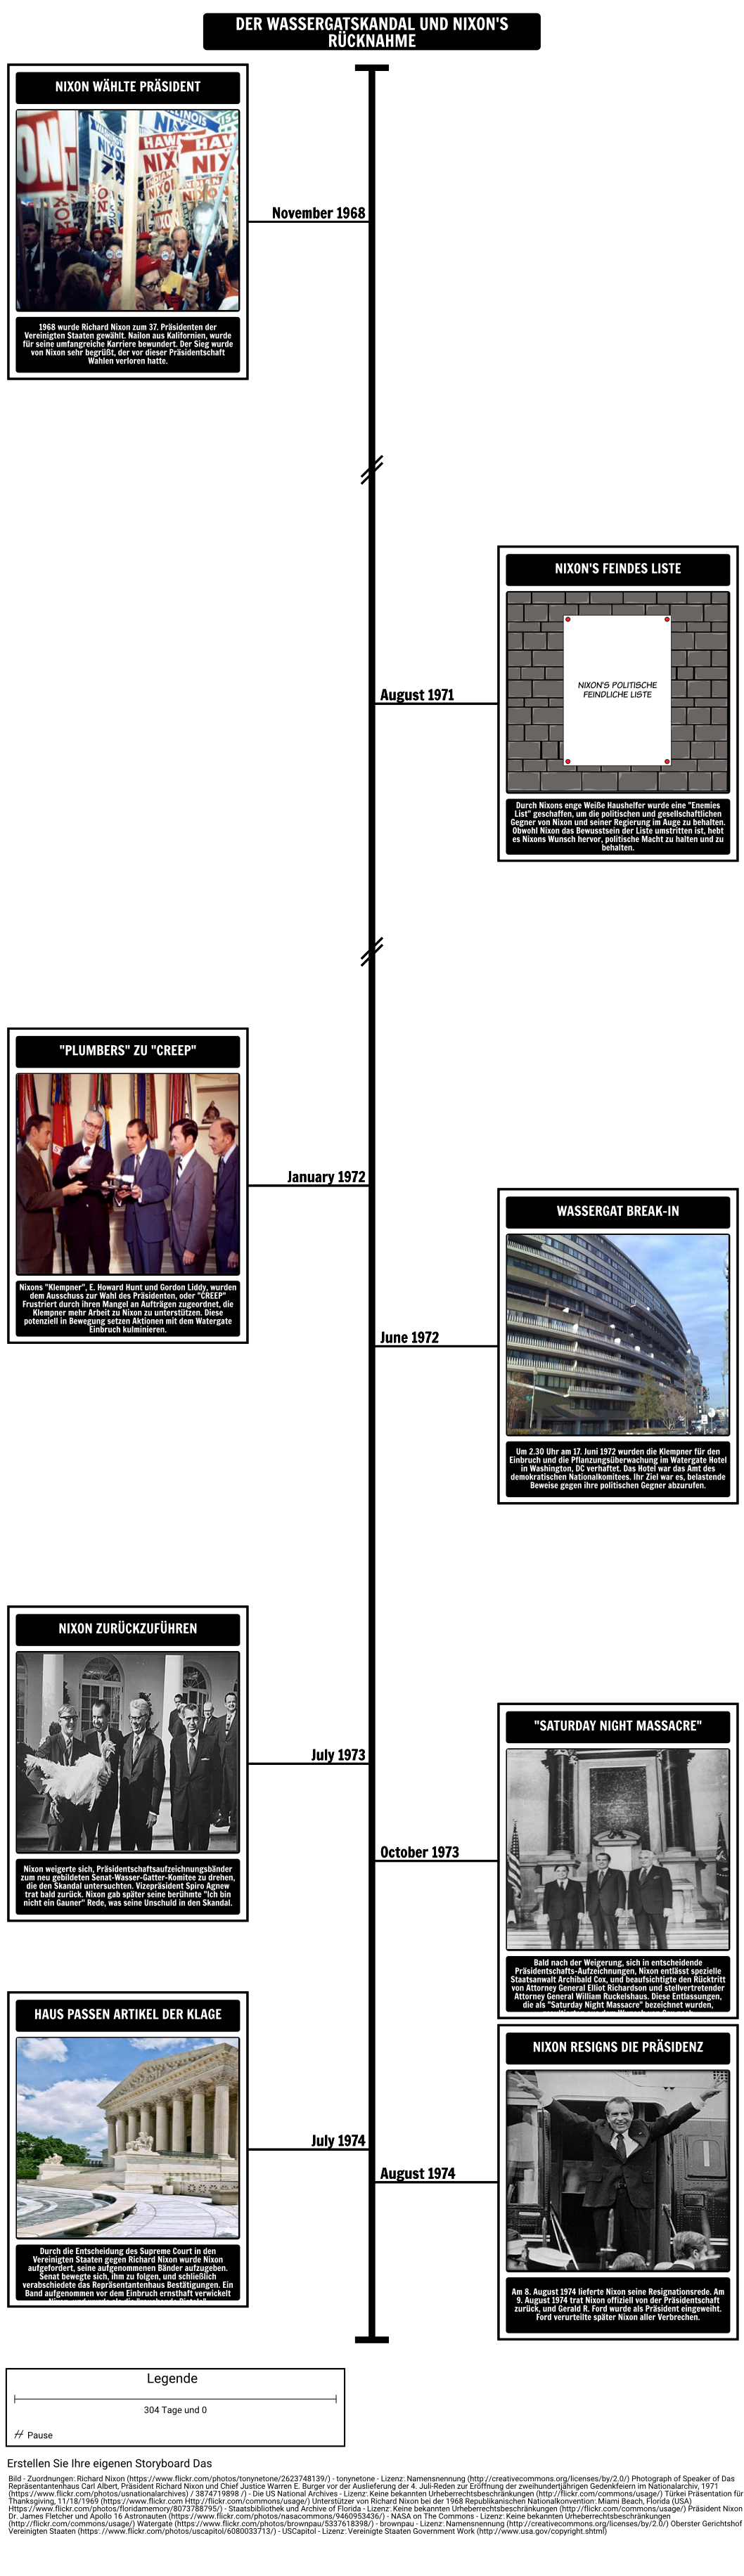 The Watergate Skandal Timeline und Nixons Rücktritt